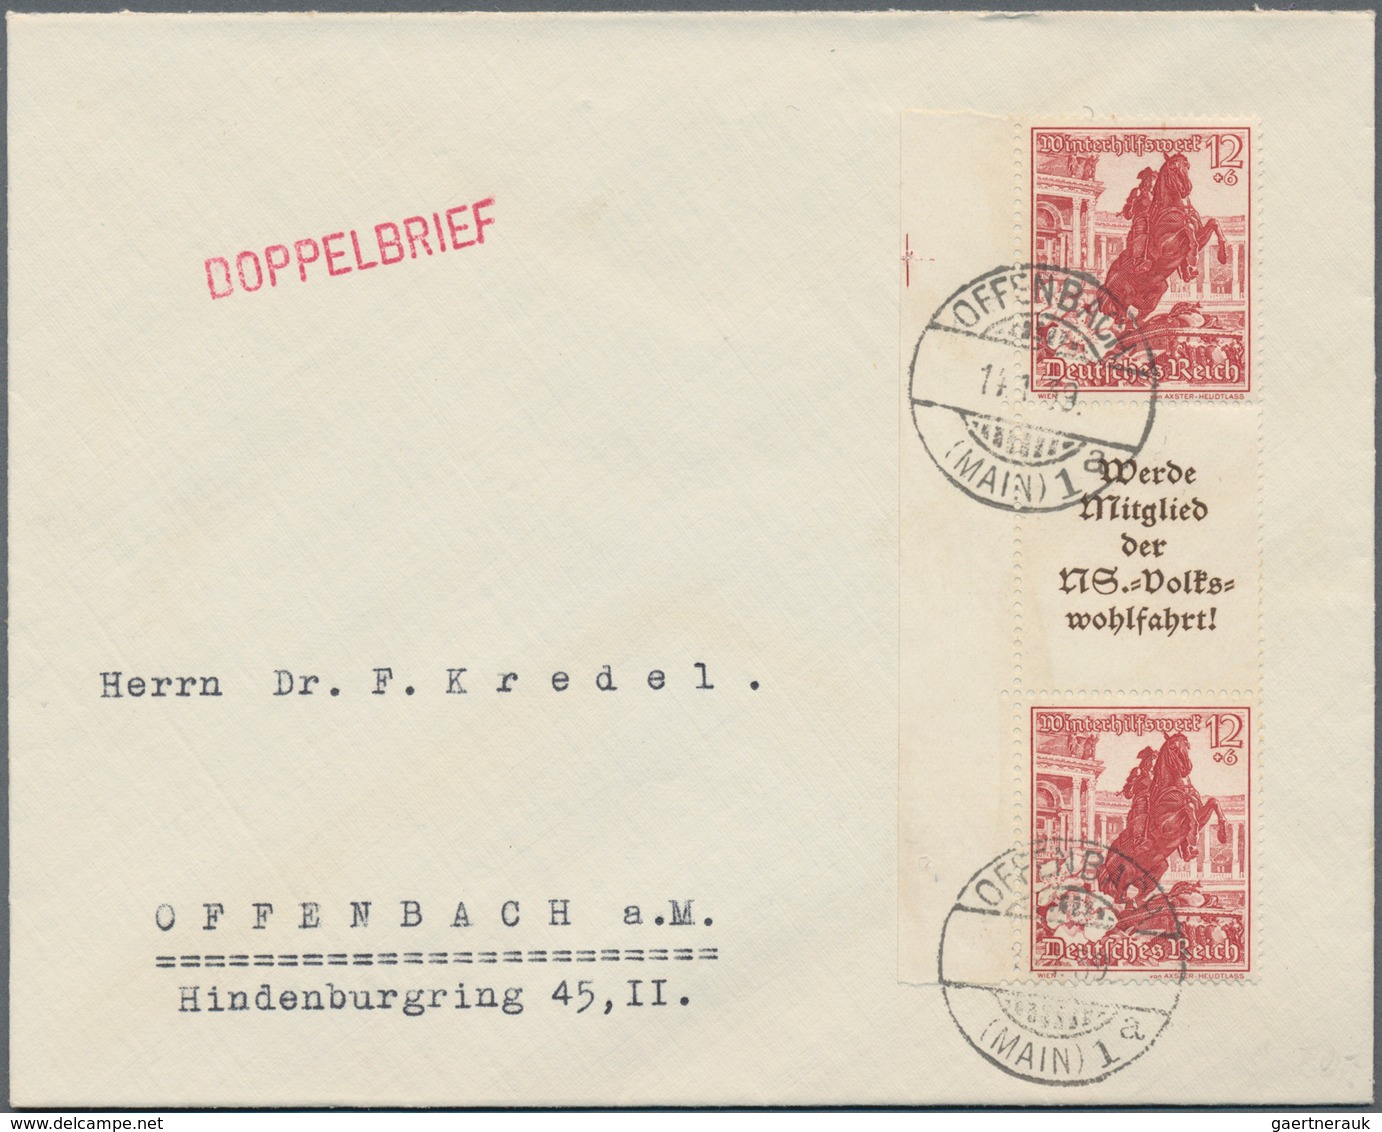 Deutsches Reich: 1872/1945, substanziell guter und sehr ergiebiger Posten von einigen tausend Briefe